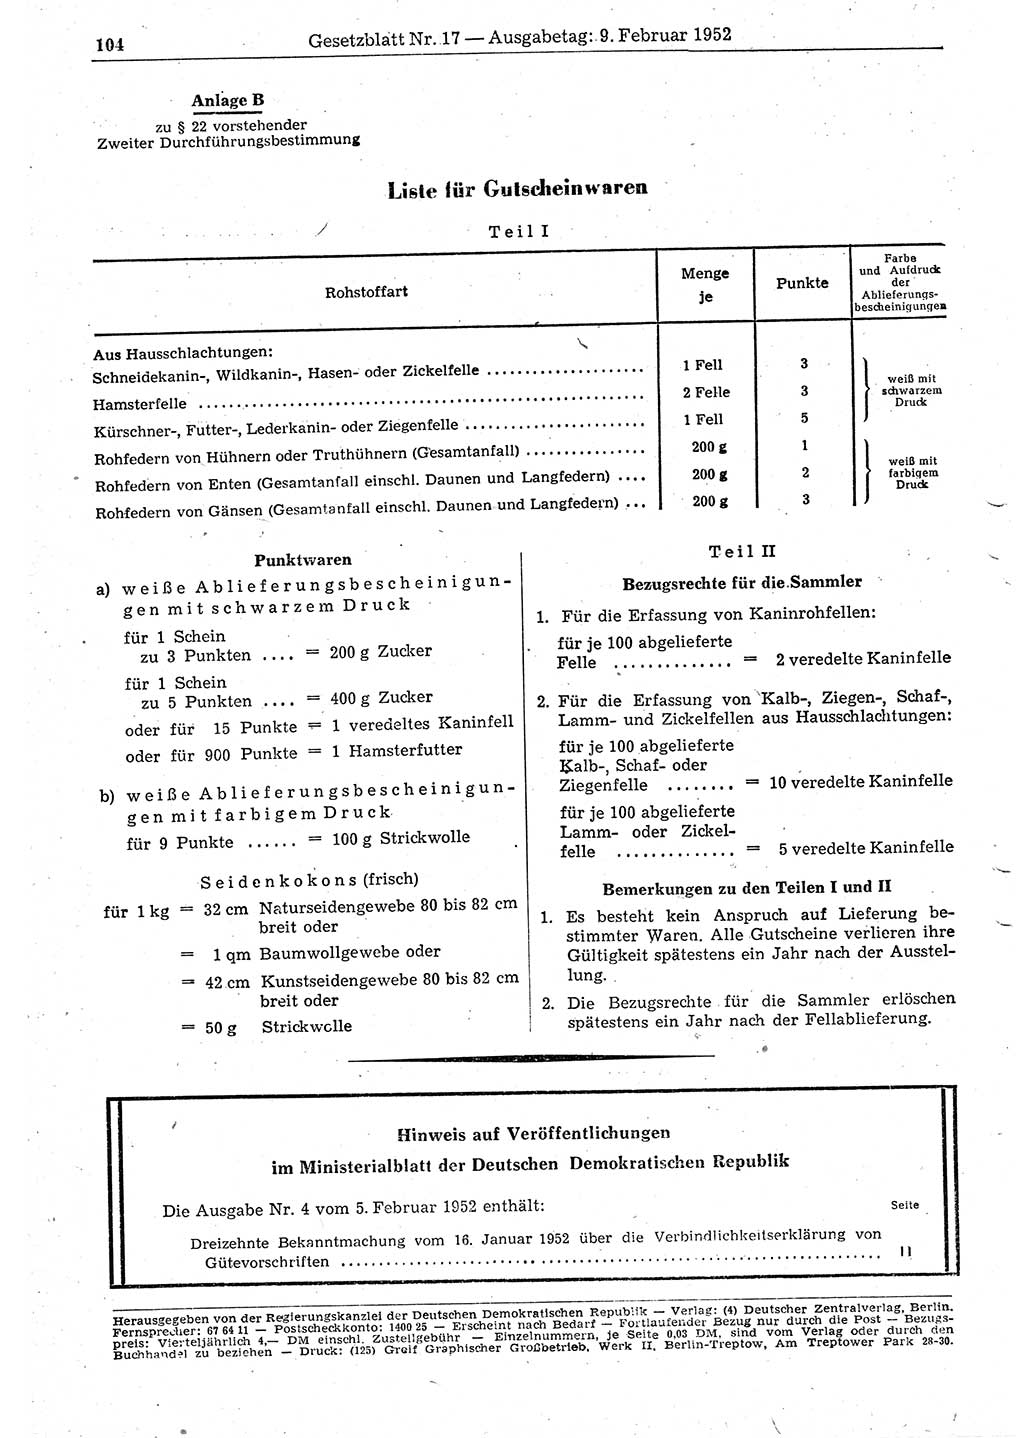 Gesetzblatt (GBl.) der Deutschen Demokratischen Republik (DDR) 1952, Seite 104 (GBl. DDR 1952, S. 104)